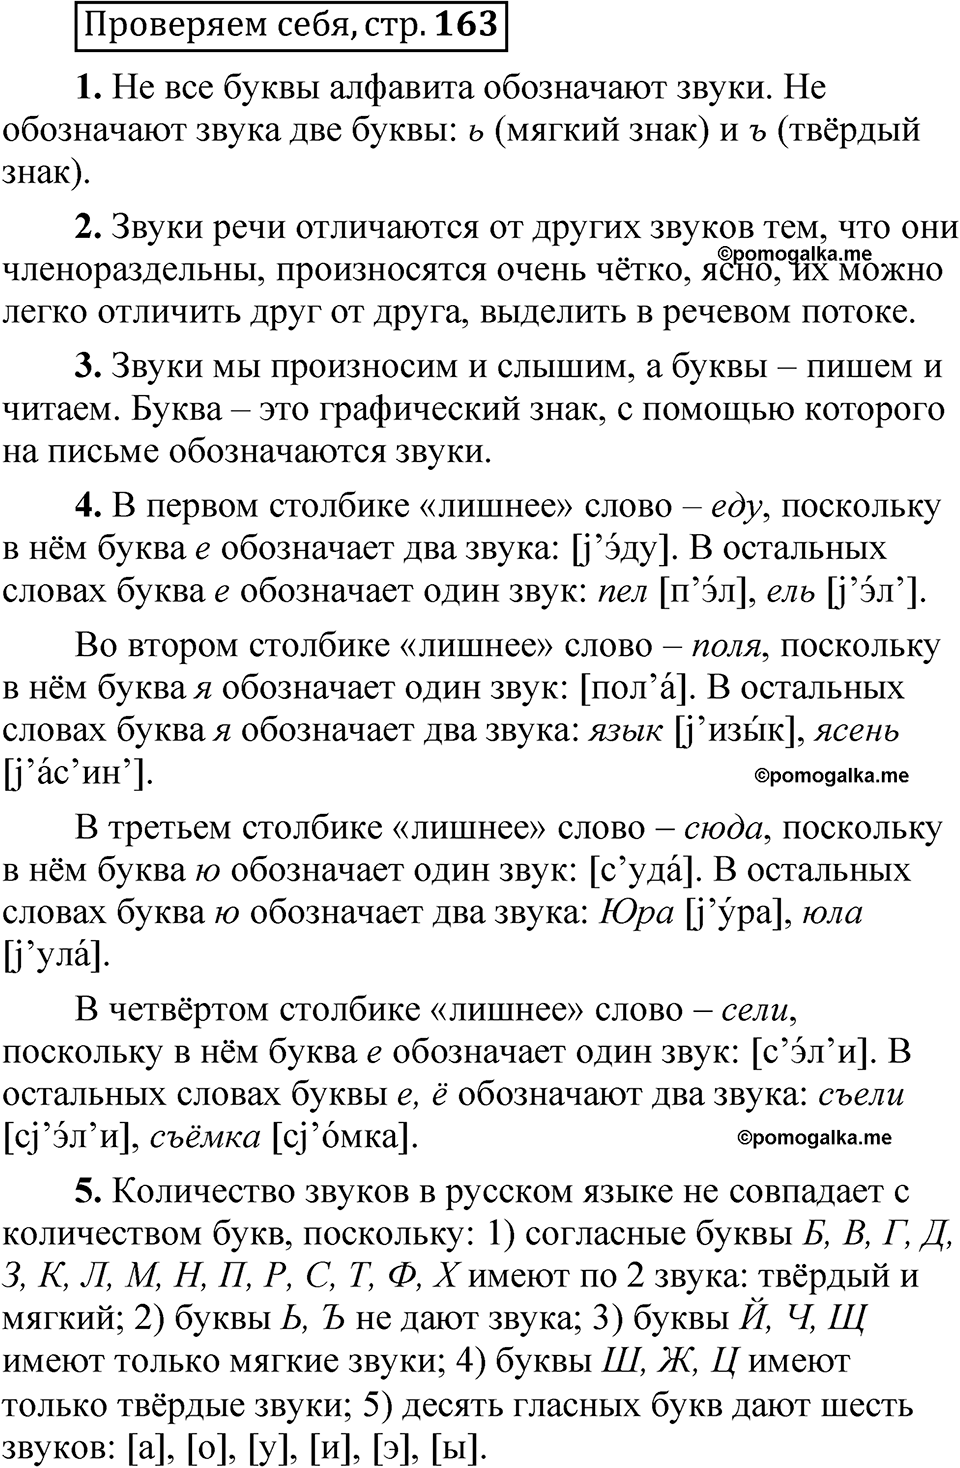 страница 163 Проверяем себя русский язык 5 класс Быстрова, Кибирева 1 часть 2021 год